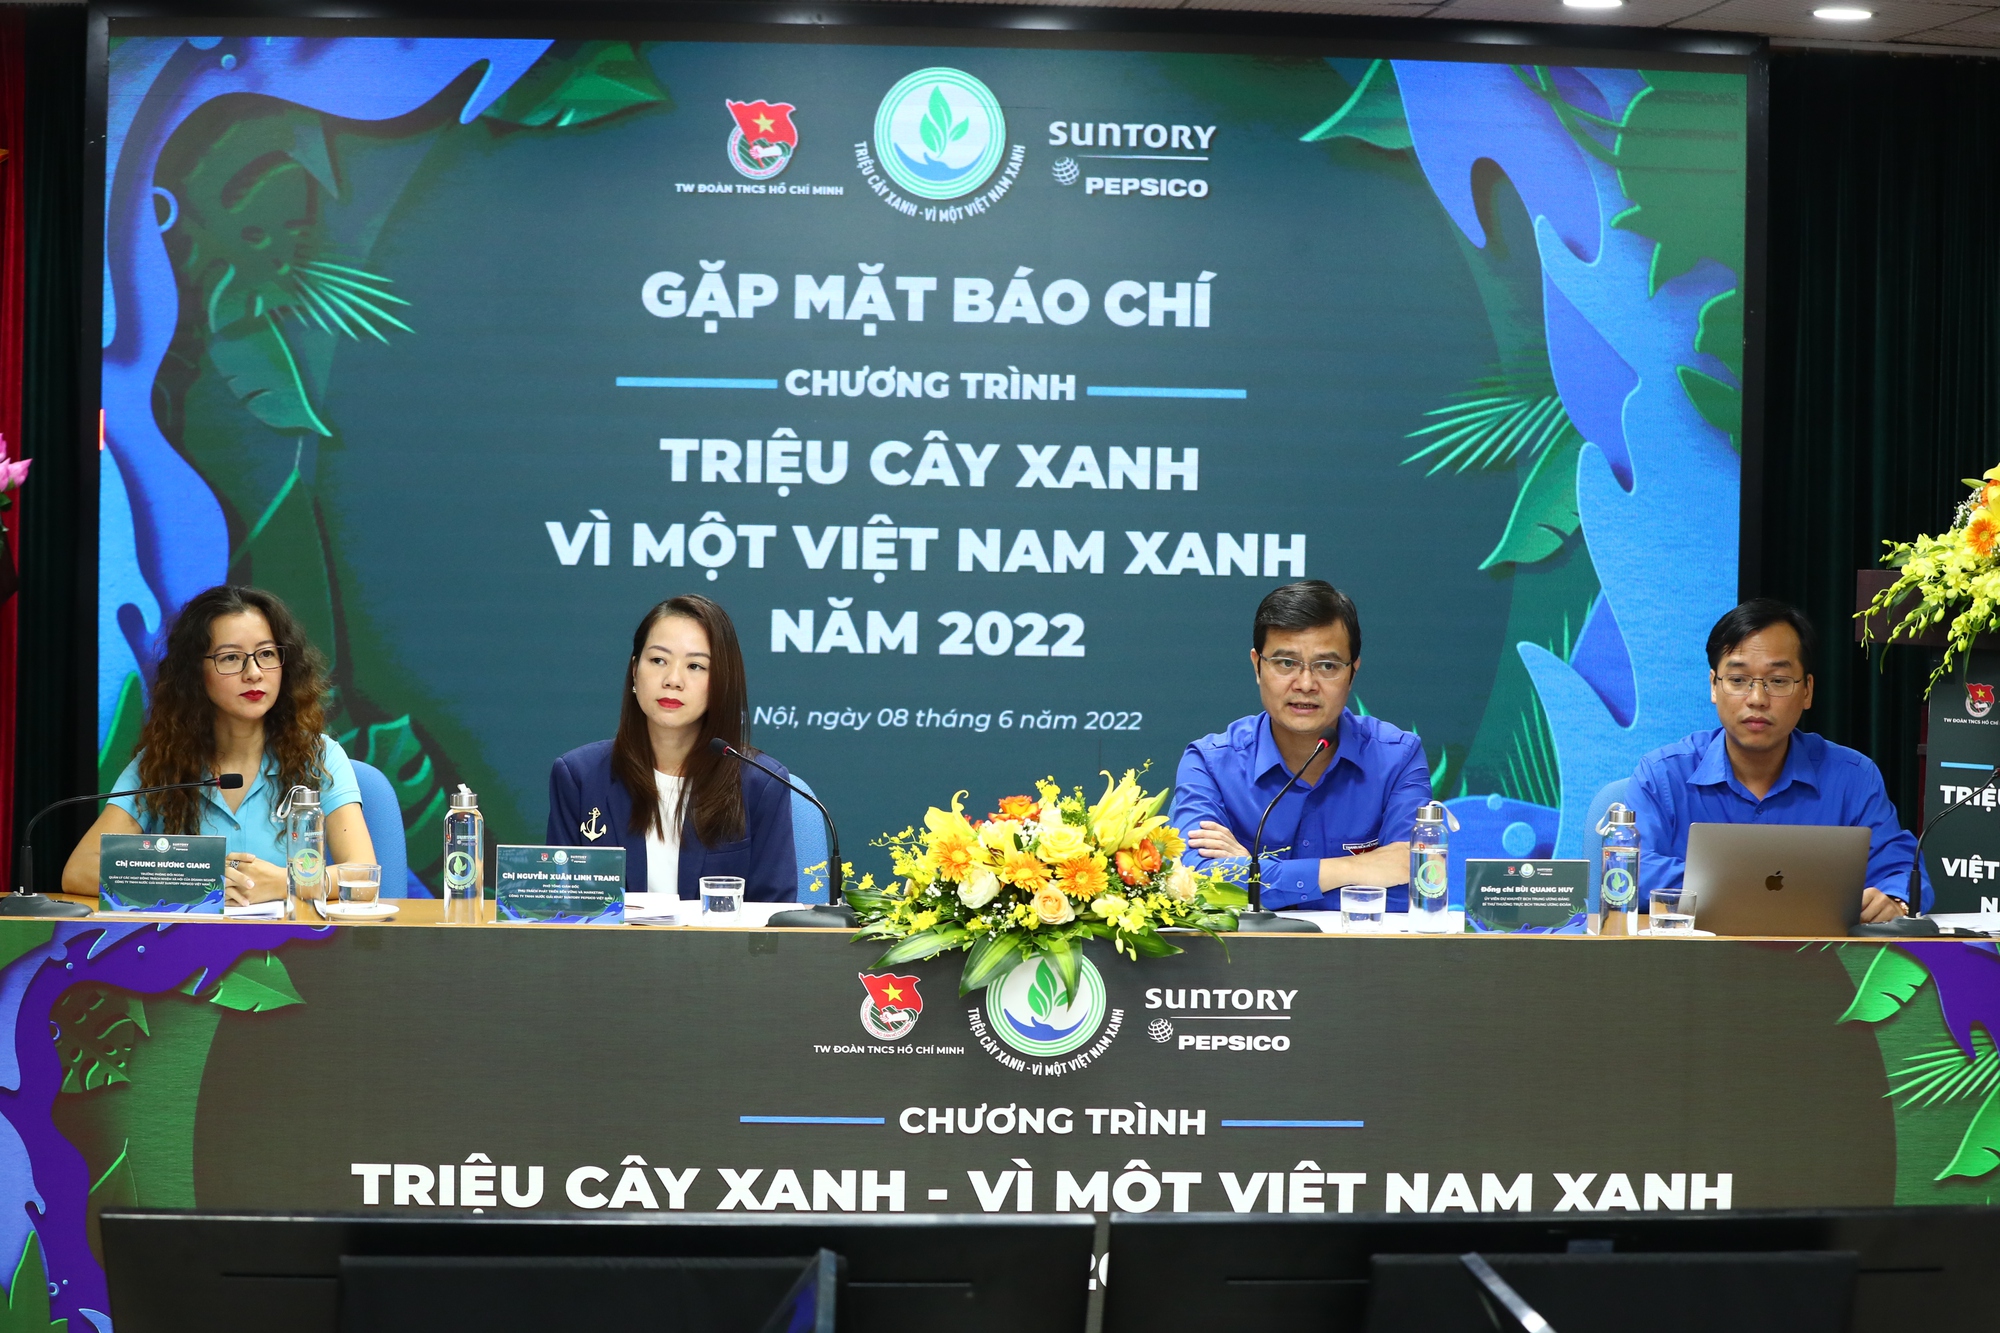 Bí thư Thường trực T.Ư Đoàn: Thanh niên sẽ trồng 60.000 cây xanh trong năm 2022 - Ảnh 1.